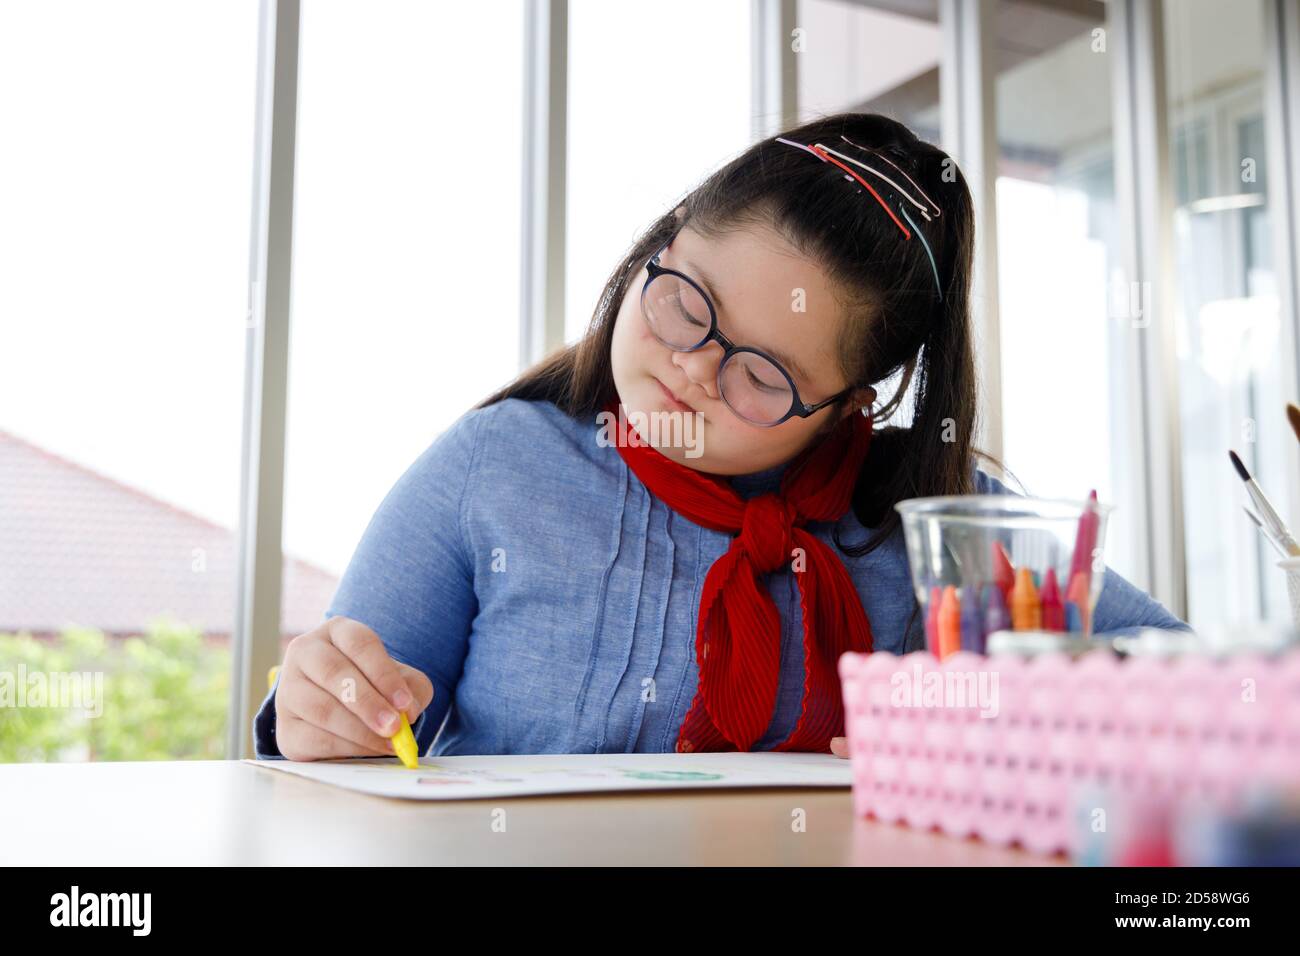 Fille avec le syndrome de Down dessin image avec crayon dans la classe d'art. Concept d'apprentissage des enfants handicapés. Banque D'Images